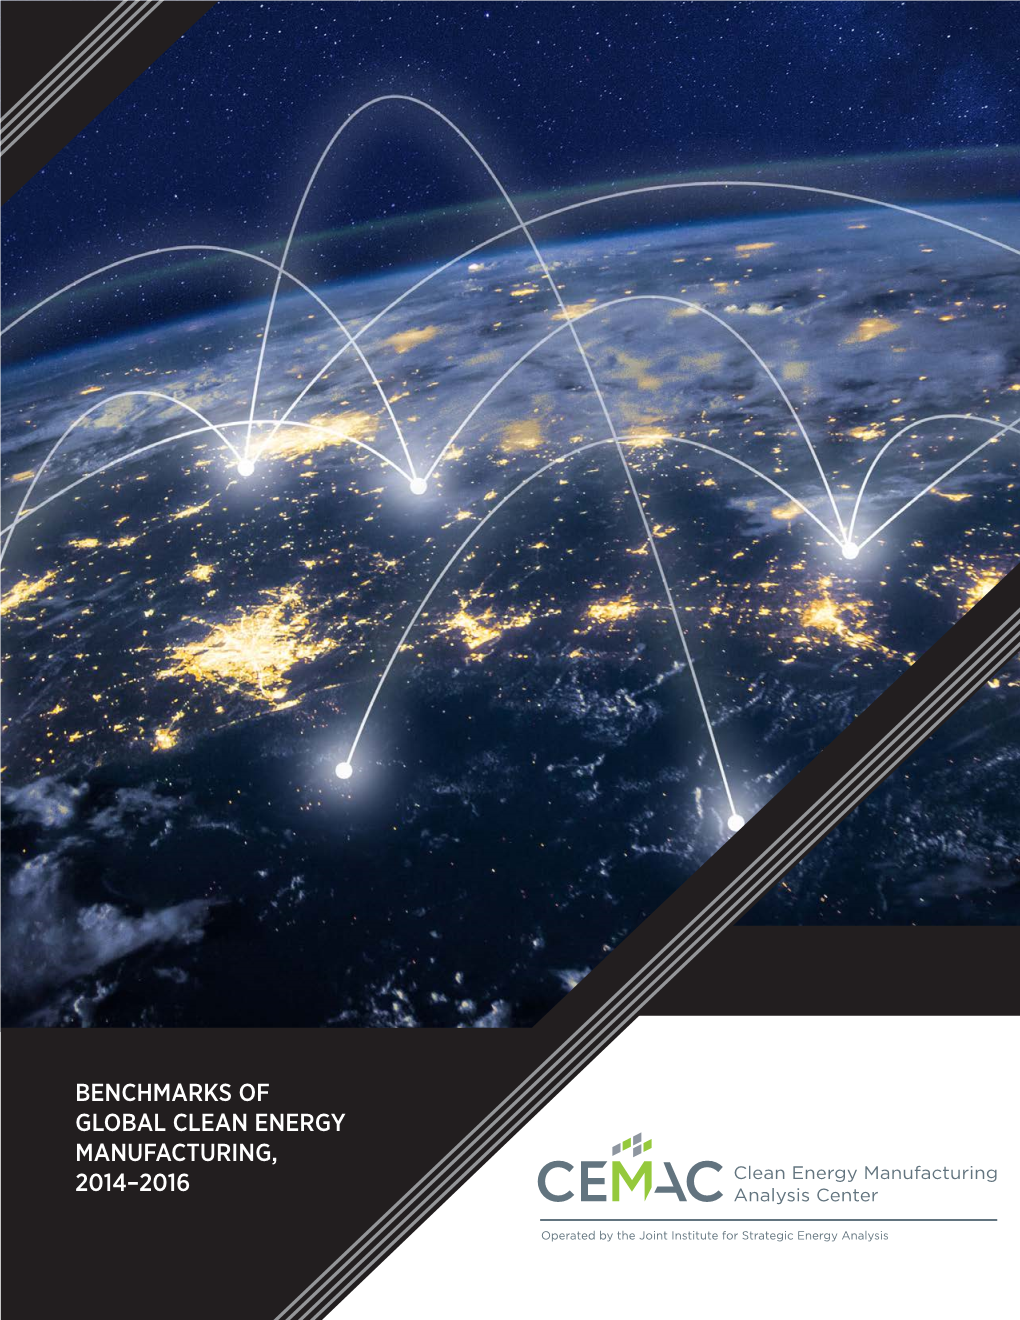 Benchmarks of Global Clean Energy Manufacturing, 2014-2016: Framework and Methodologies (Sandor Et Al